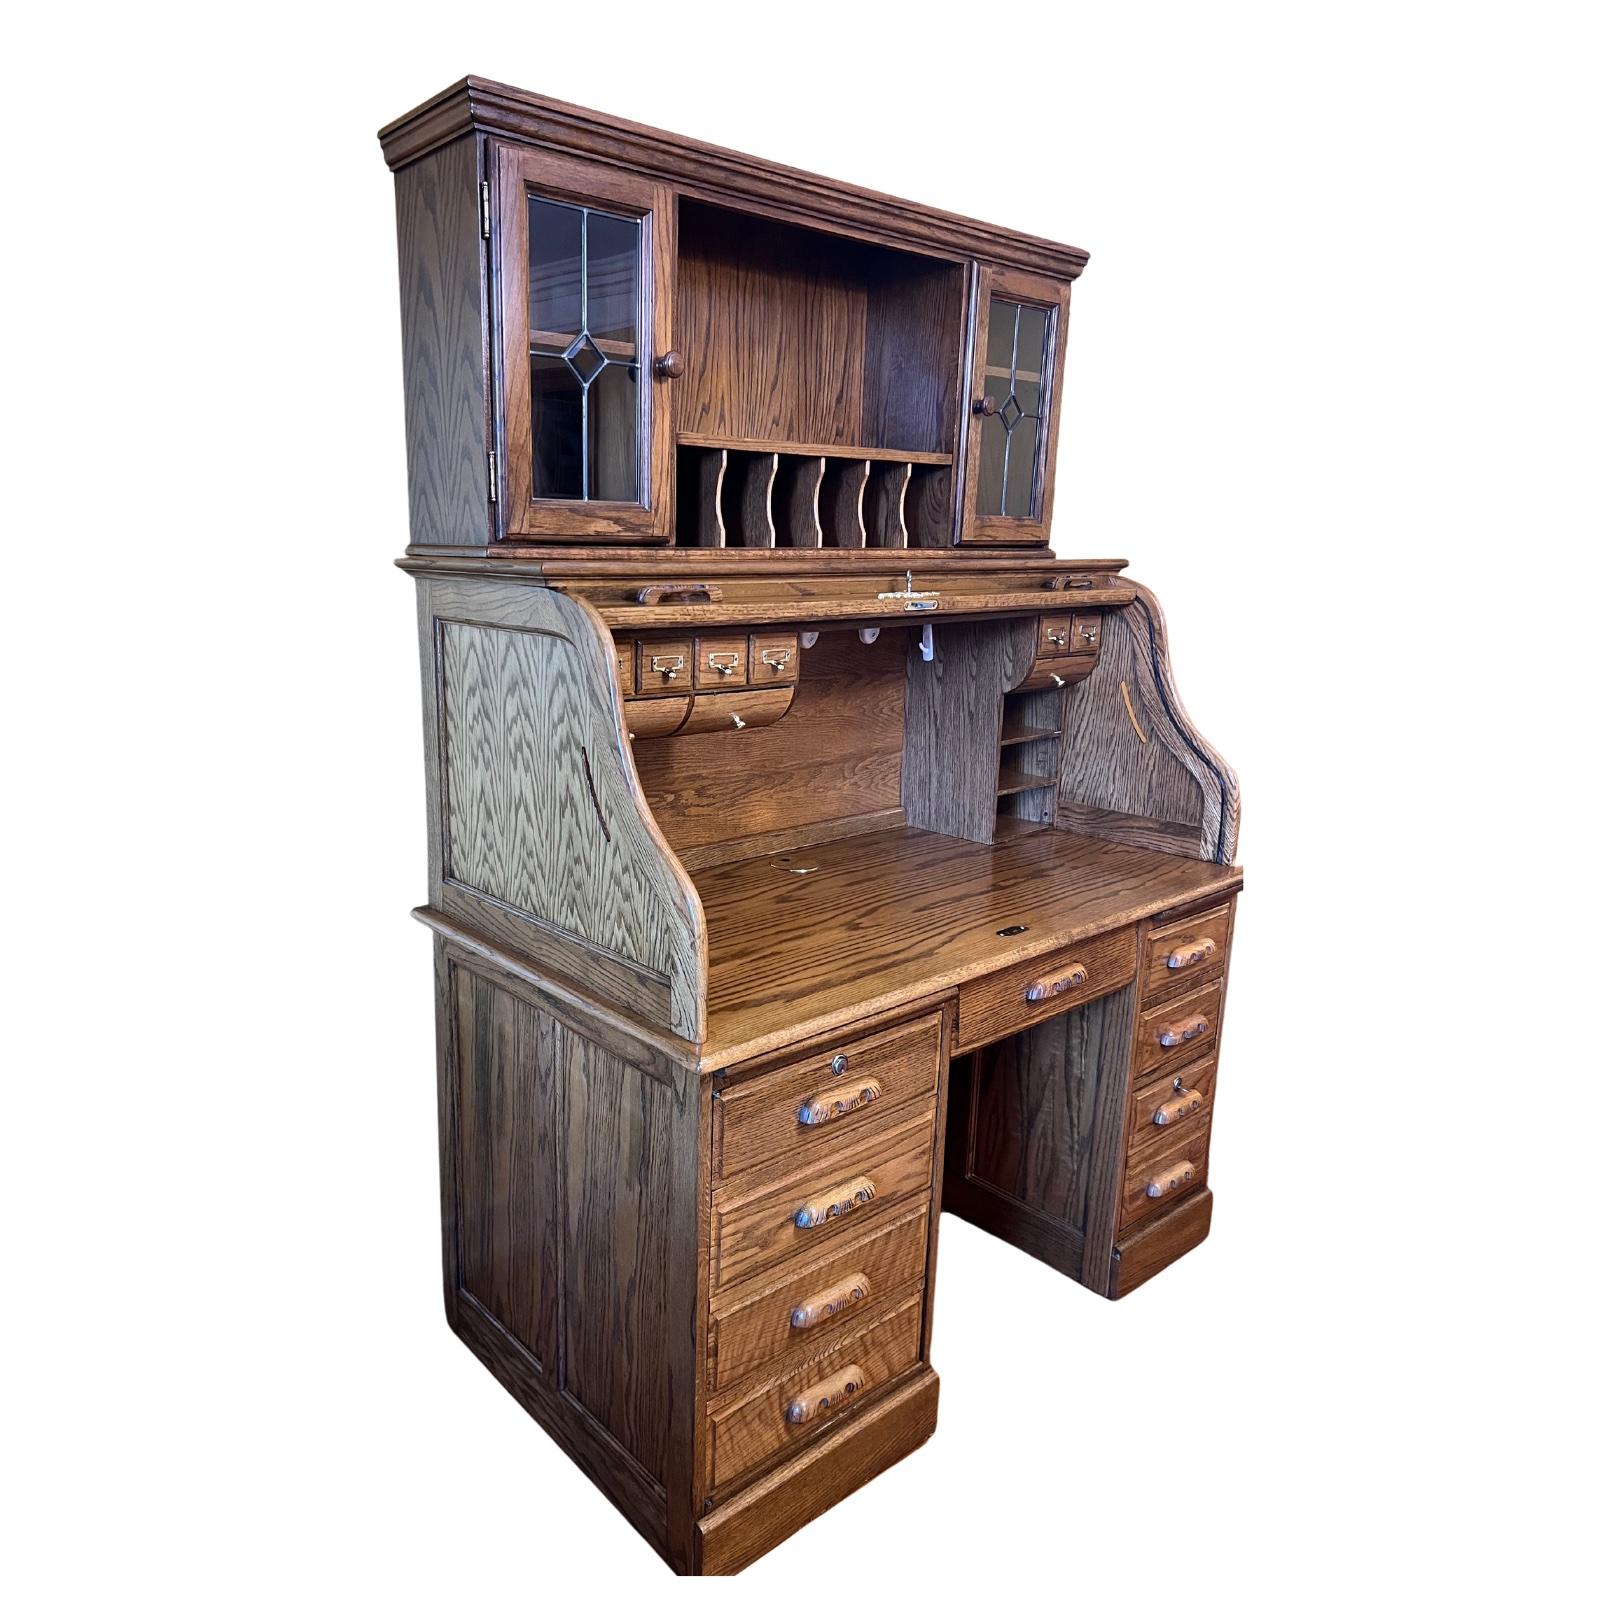 Fabriqué en Amérique, cette reproduction d'un bureau de style antique a tout ce qu'il faut pour une utilisation moderne mais a l'air d'une antiquité, livré avec les clés des tiroirs du dessus et du dessous, le bureau a 9 petits tiroirs avec 2